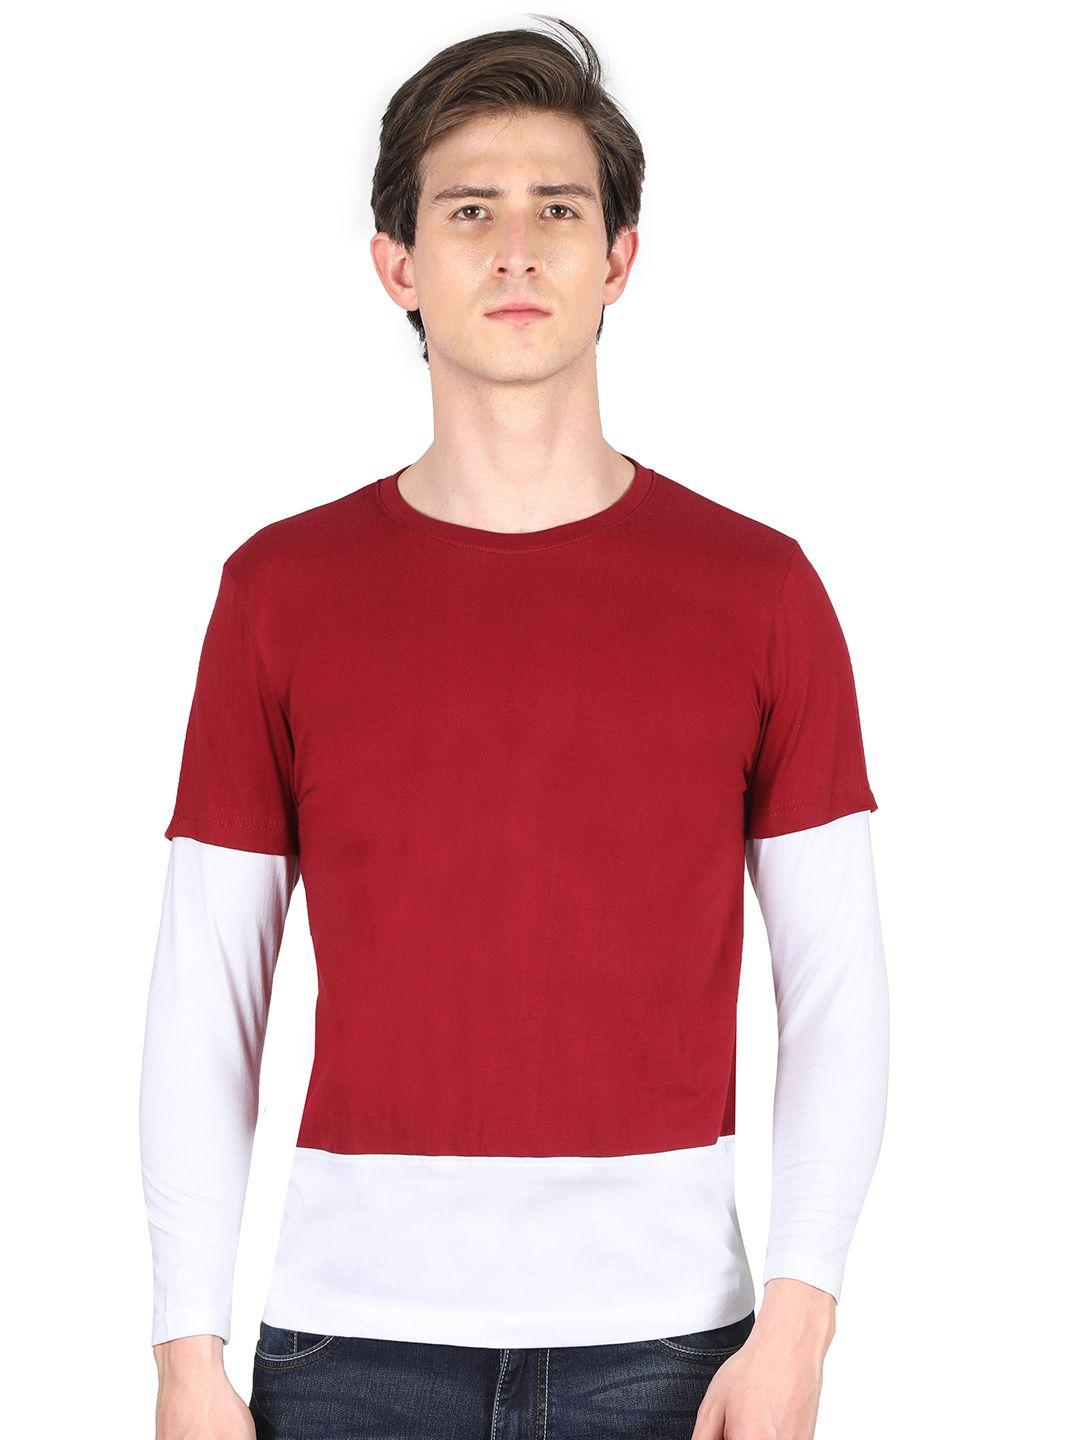 fleximaa men maroon & white colourblocked cotton t-shirt